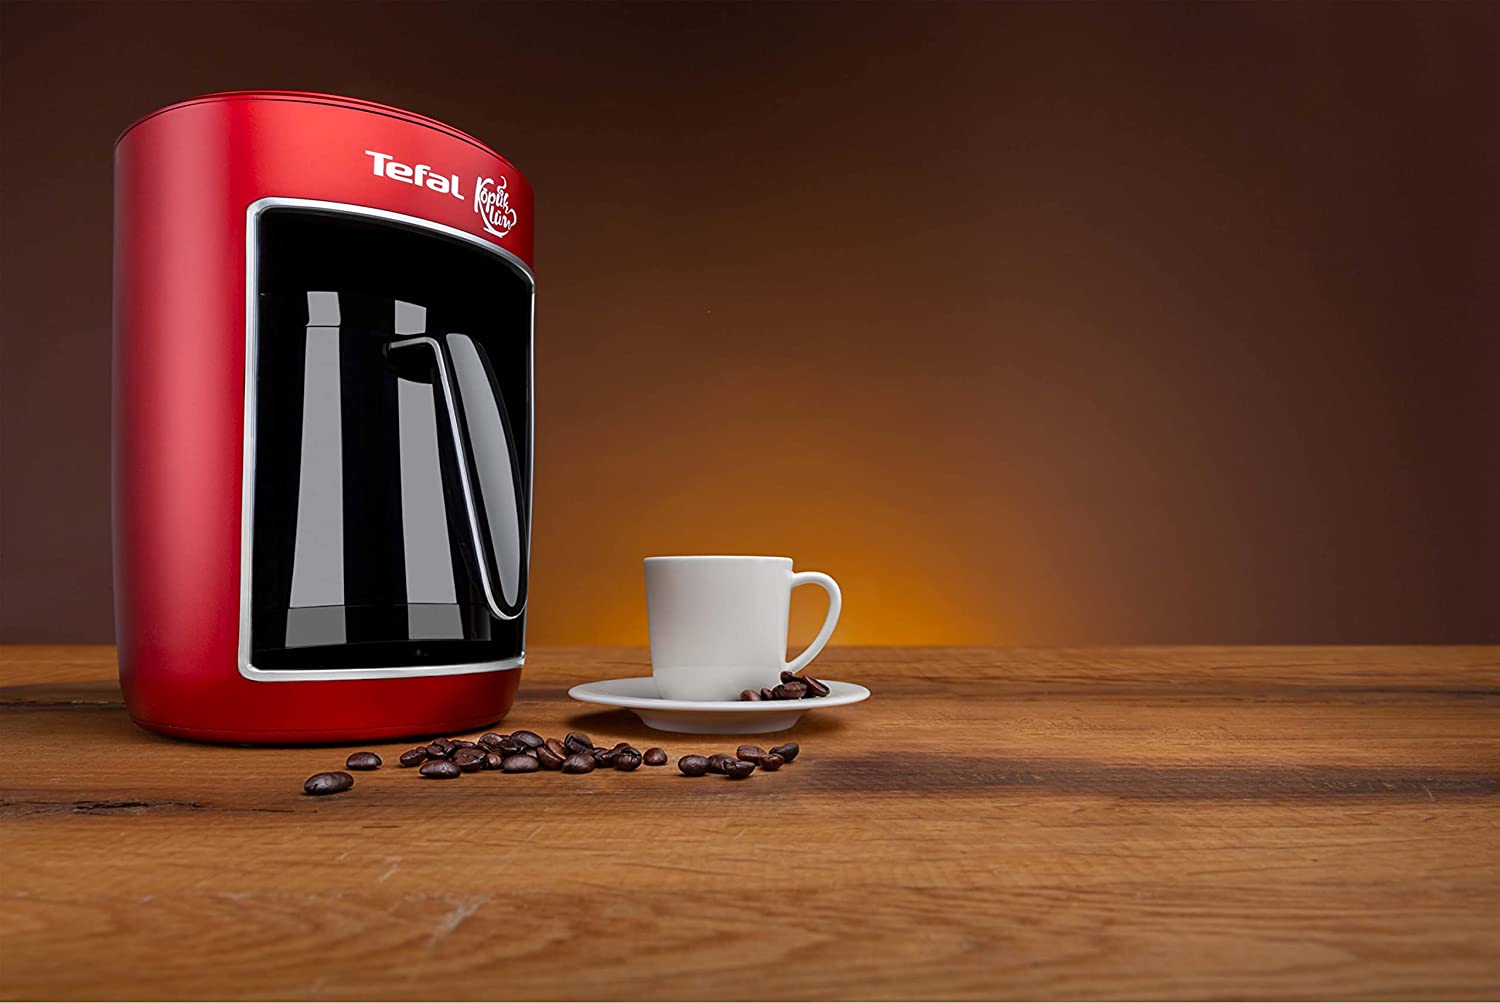 ماكينة تحضير القهوة التركي تيفال، 735 وات، شاشة تعمل باللمس، ديجيتال، أحمر، CM820534